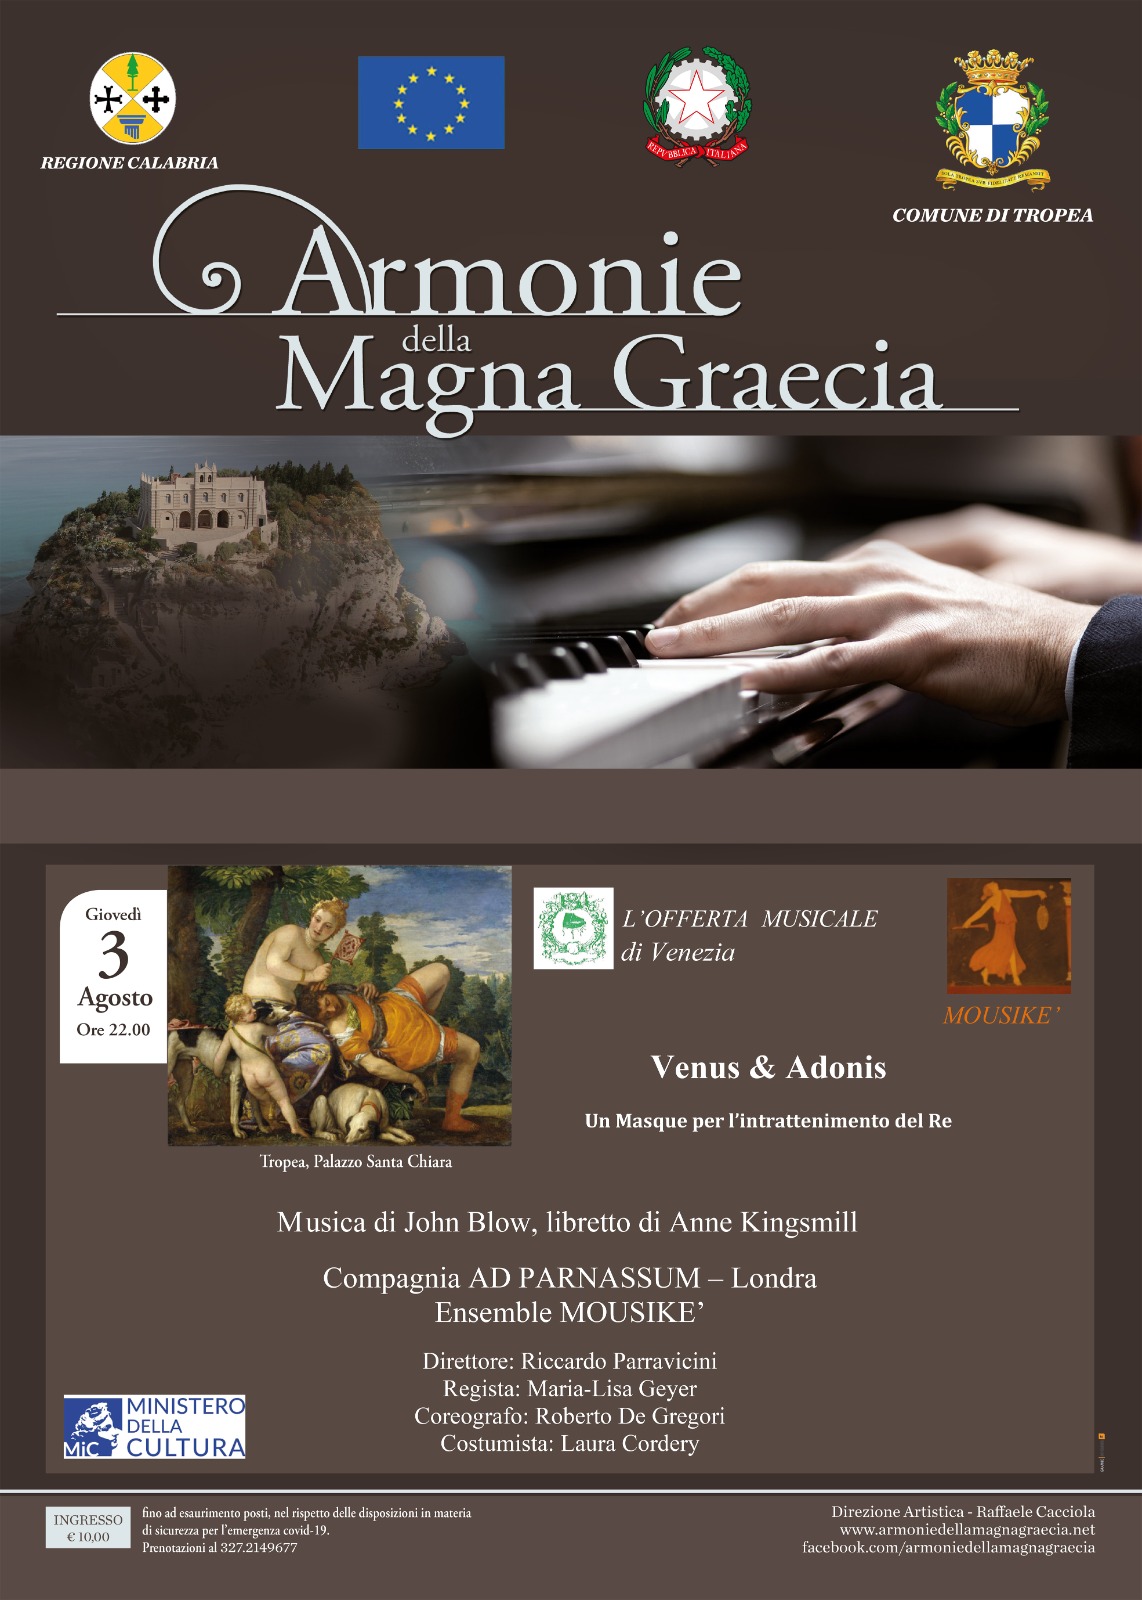 Armonie della Magna Graecia – Giovedì 3 Agosto ore 22.00 Palazzo S. Chiara